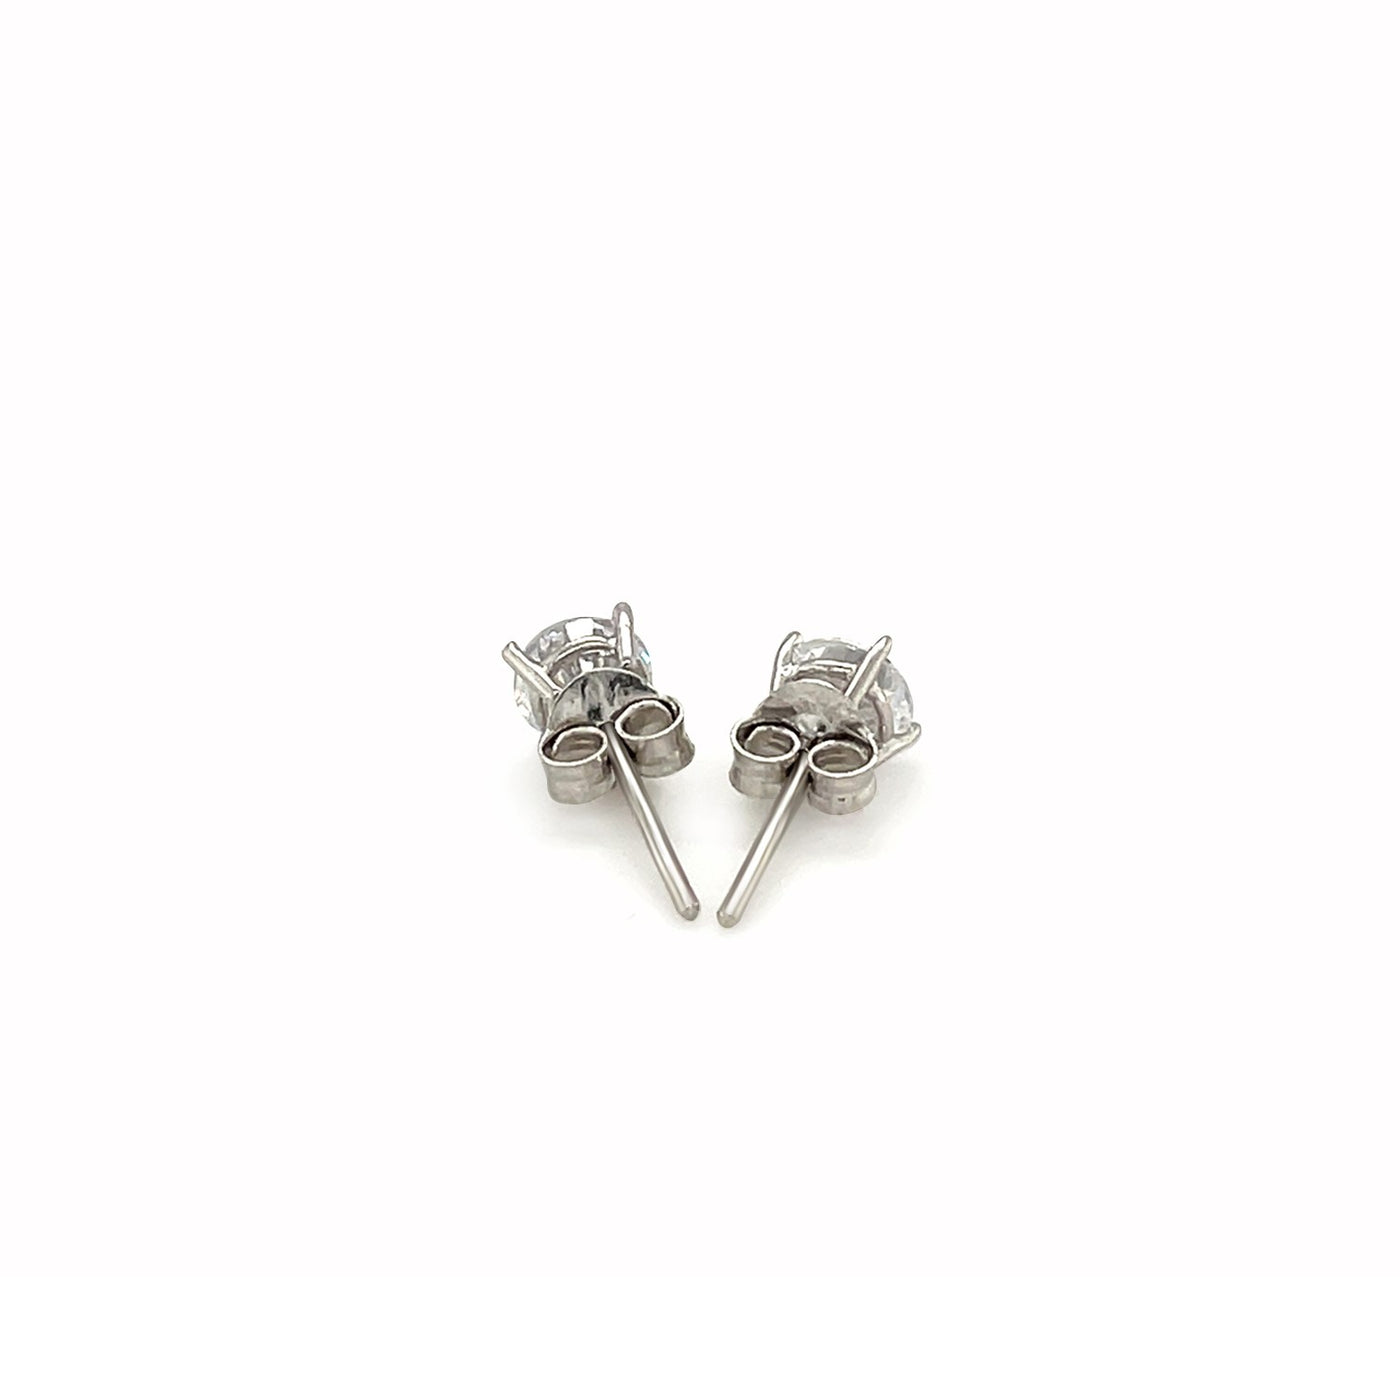 2-Pc. Set Cubic Zirconia Sterling Silver Stud Earrings (6mm)